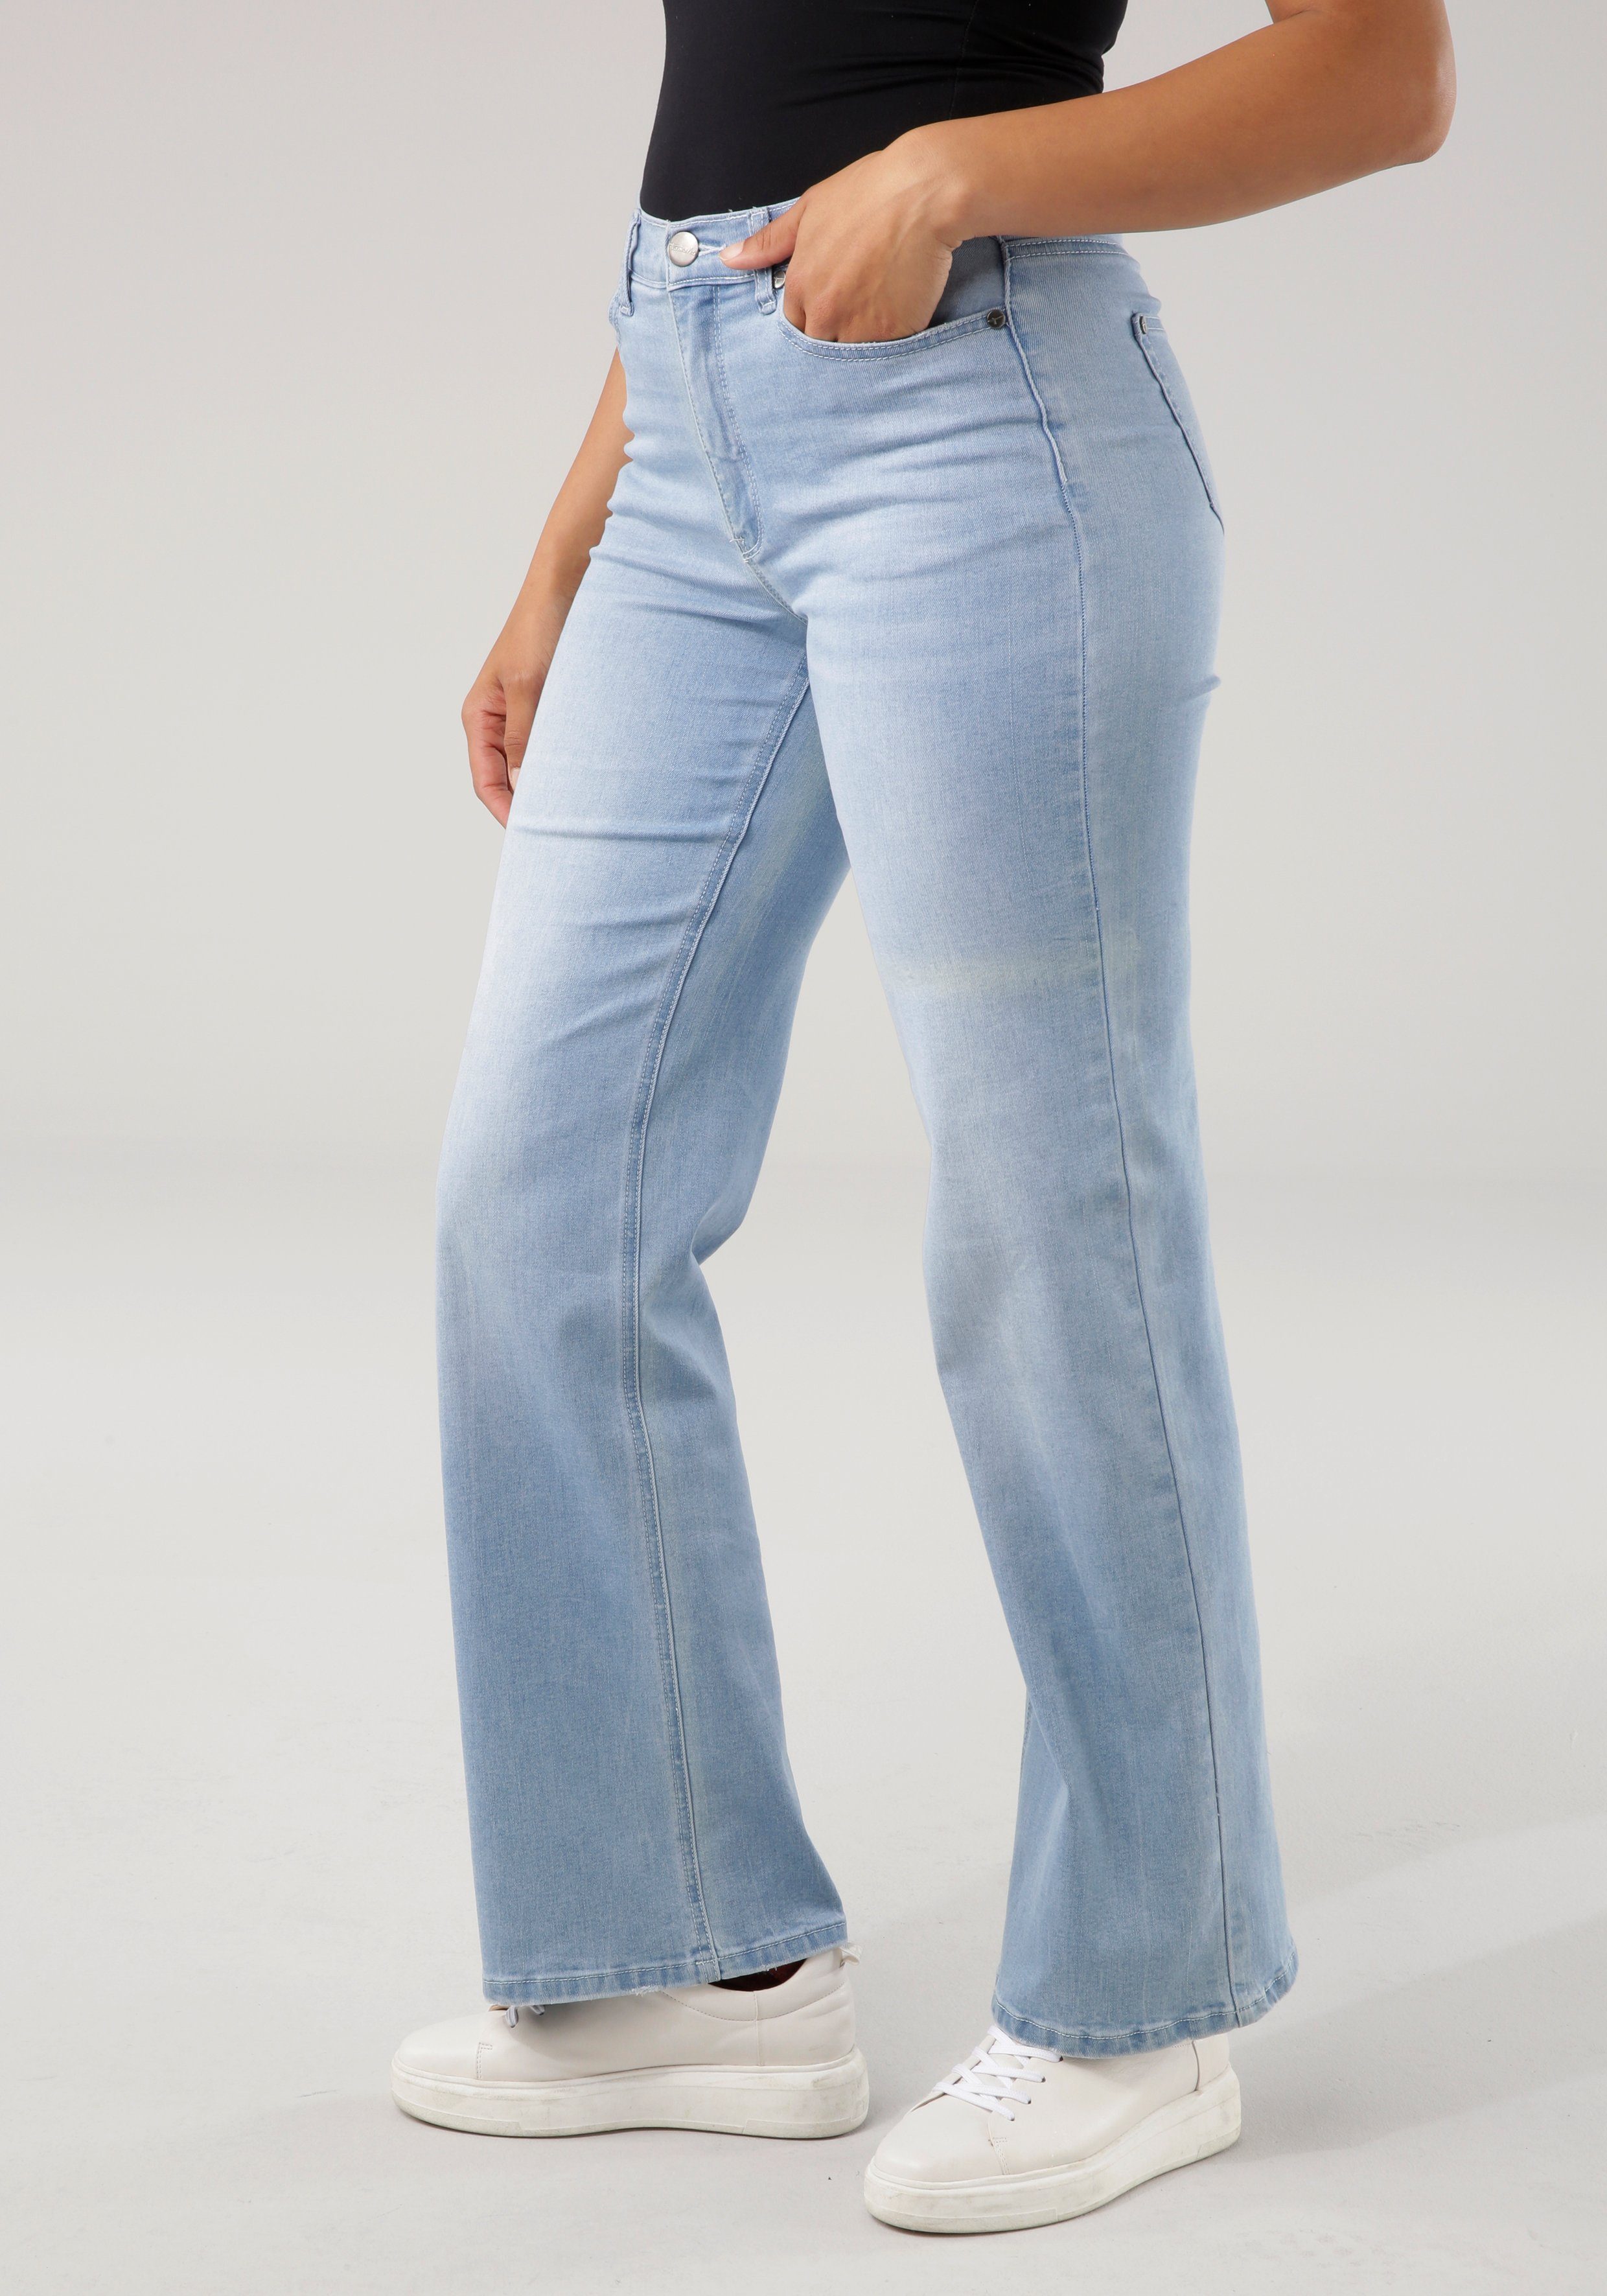 BLACK FRIDAY - Tamaris Weite Jeans im 5-pocket-Style kaufen | OTTO